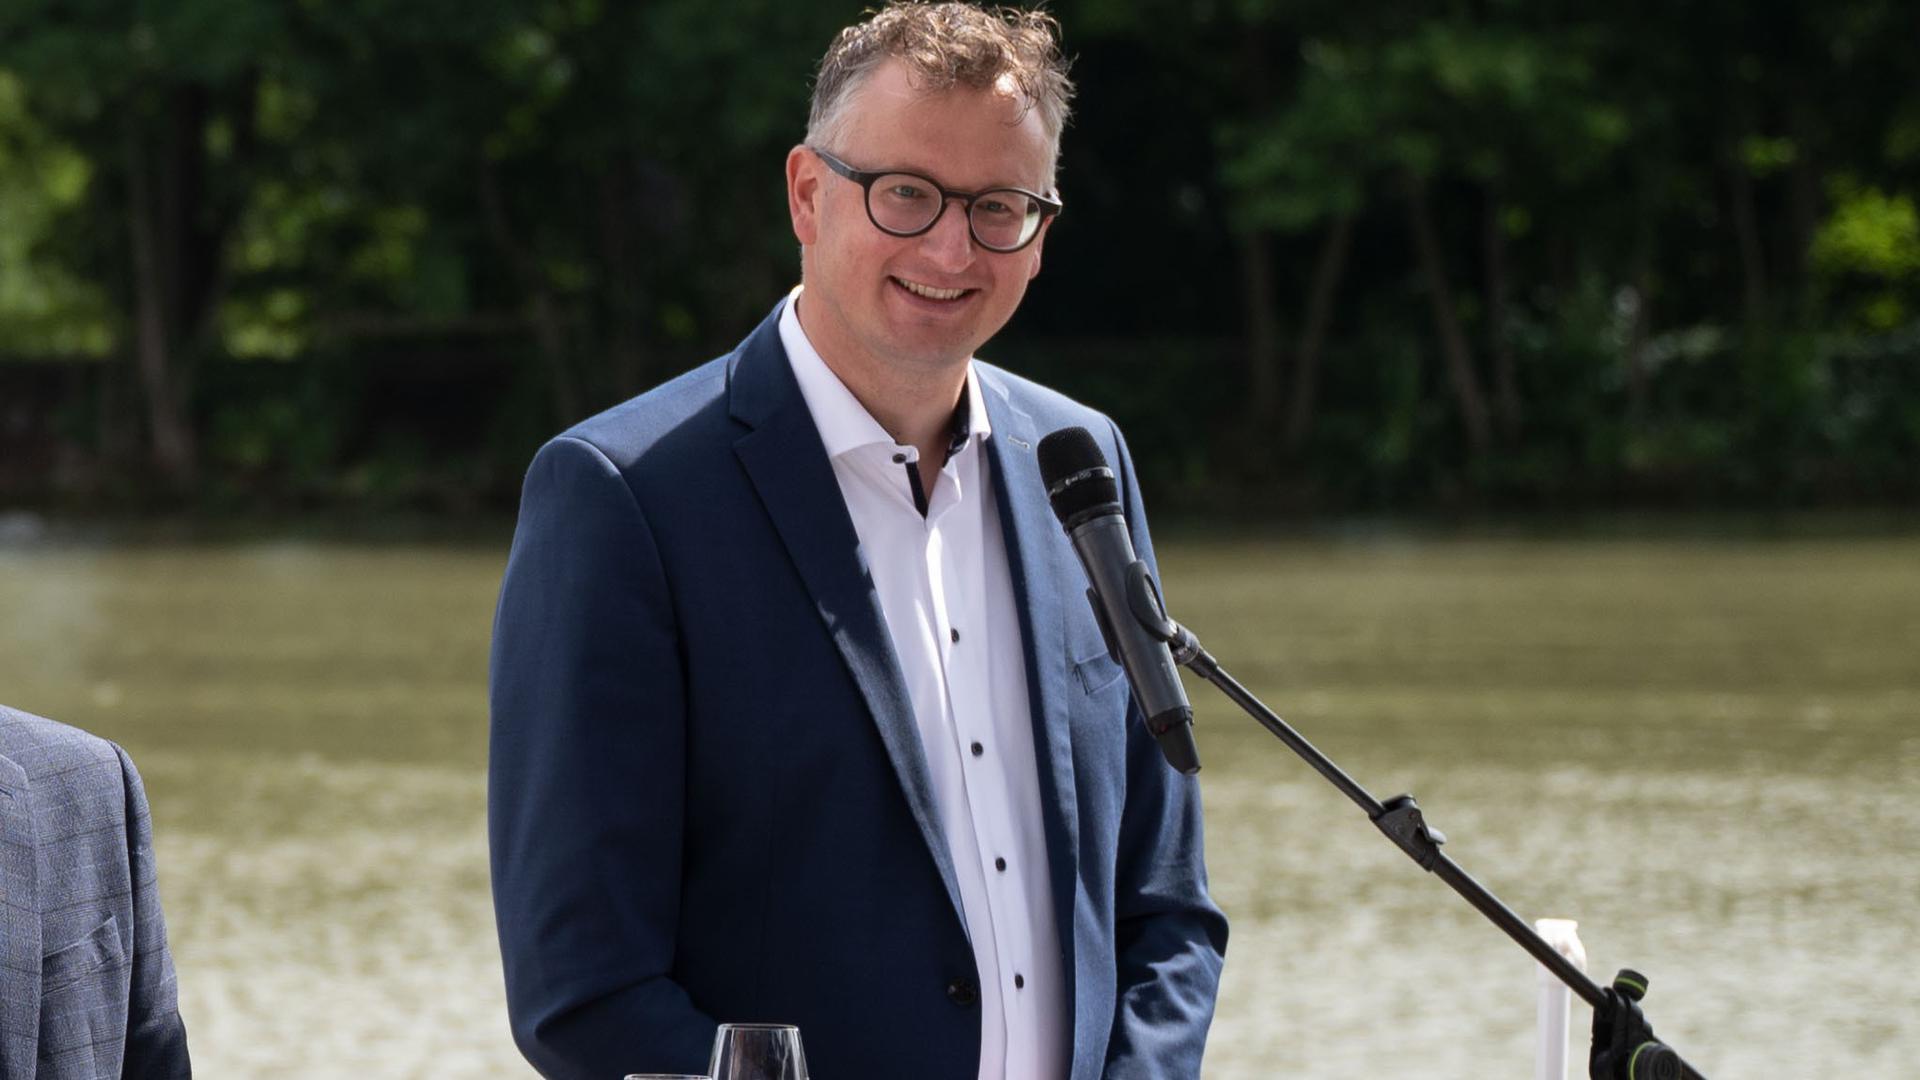 Andreas Schwarz, Fraktionsvorsitzender von Bündnis 90/Die Grünen im Landtag von Baden-Württemberg, nimmt an einer Pressekonferenz in einem gastronomischen Betrieb am Neckar teil.